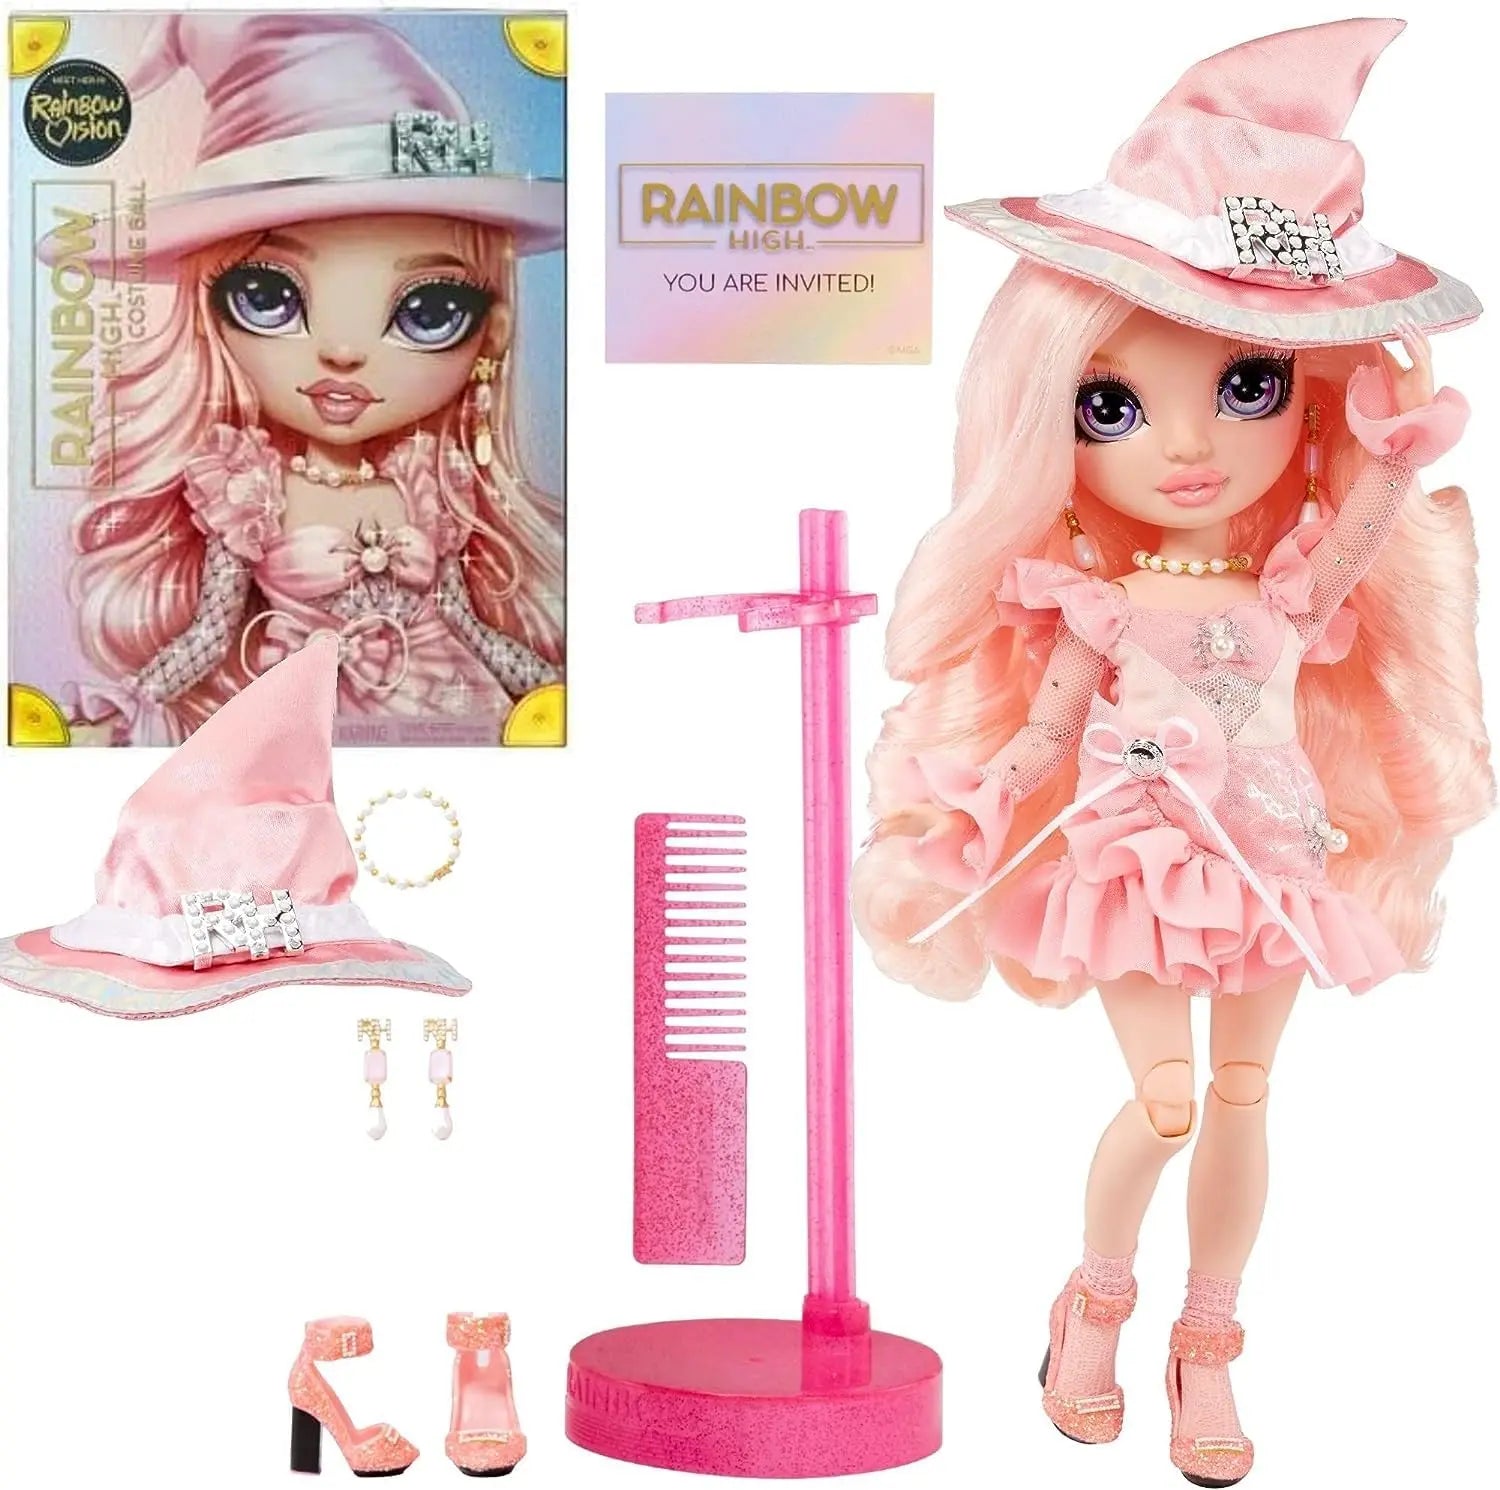 Jouetq pour enfant Barbie Fashionistas Le Dressing de Rêve rose et poupée blonde Barbie